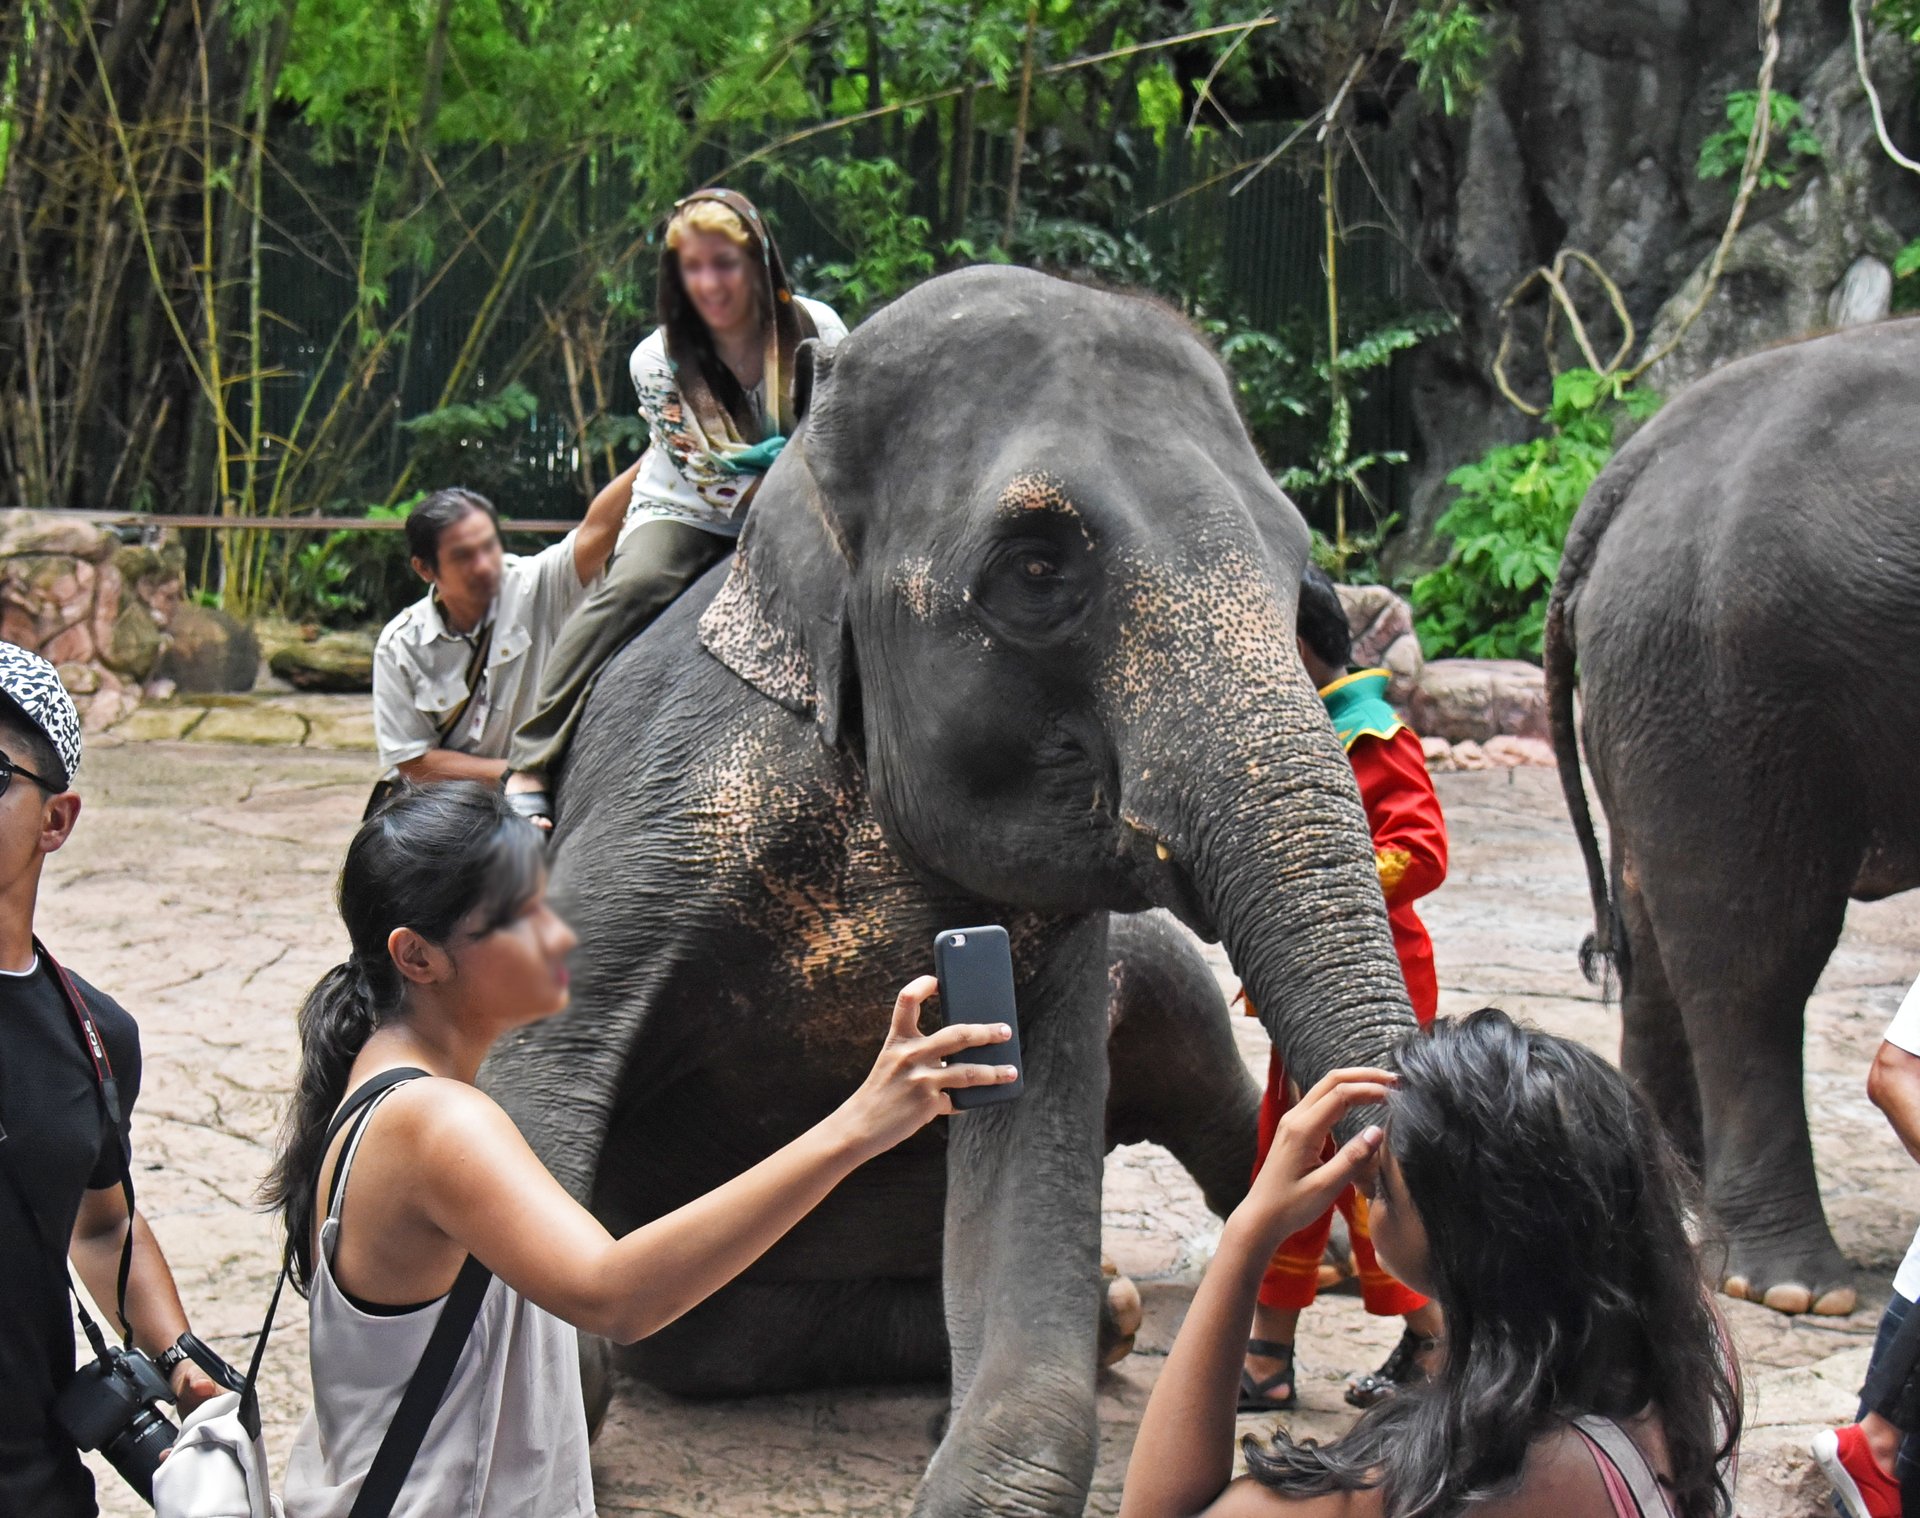 Turister tager selfies med elefant ved turistattraktion i Thailand